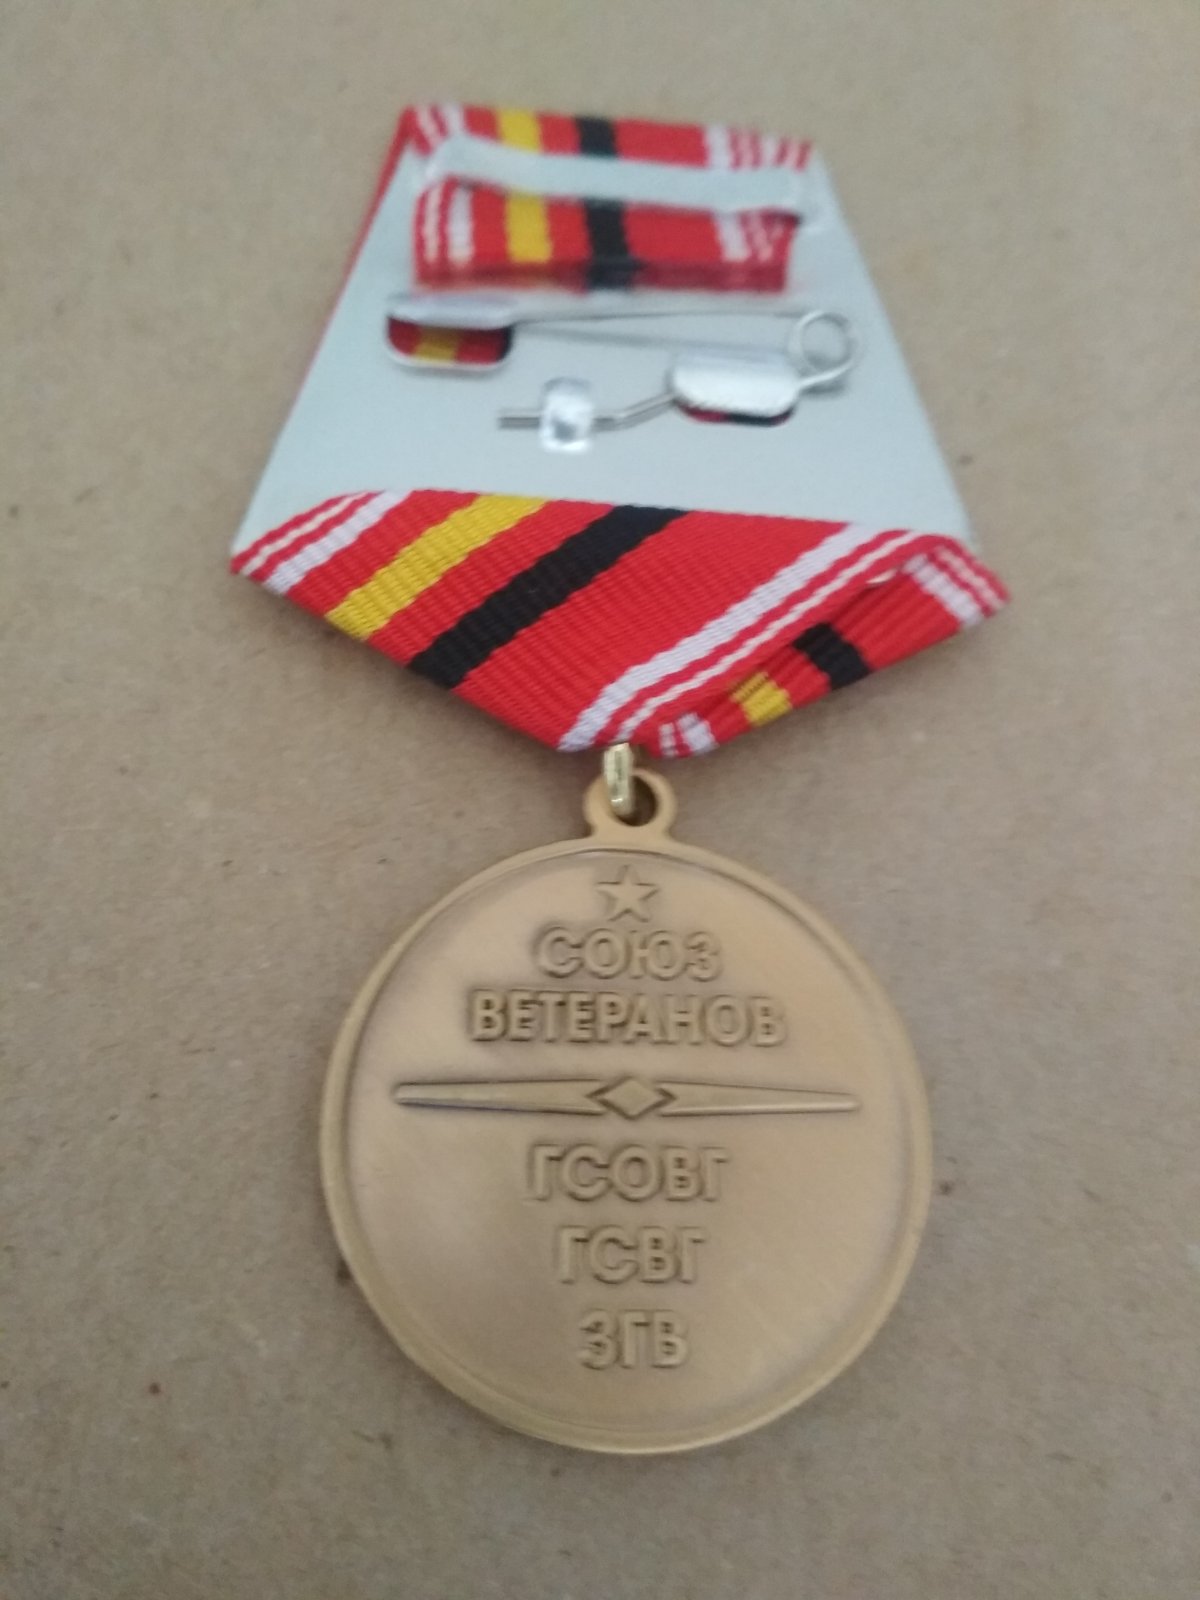 Памятная медаль "Ветеран ГСОВГ, ГСВГ, ЗГВ"